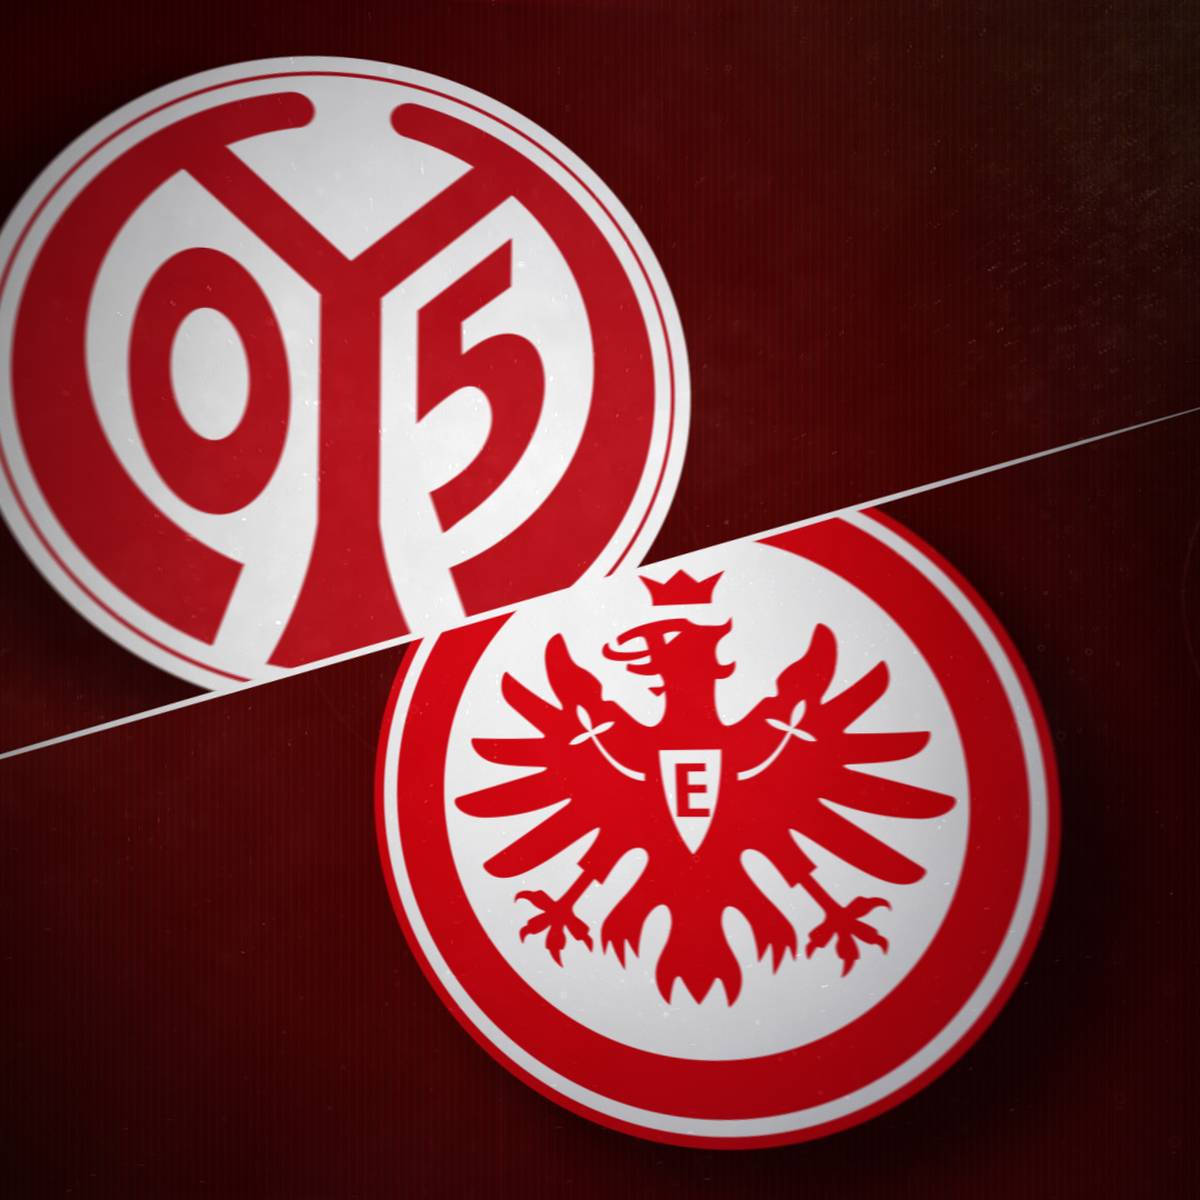 9PLUS1: Alle Infos vor 1. FSV Mainz 05 gegen Eintracht Frankfurt